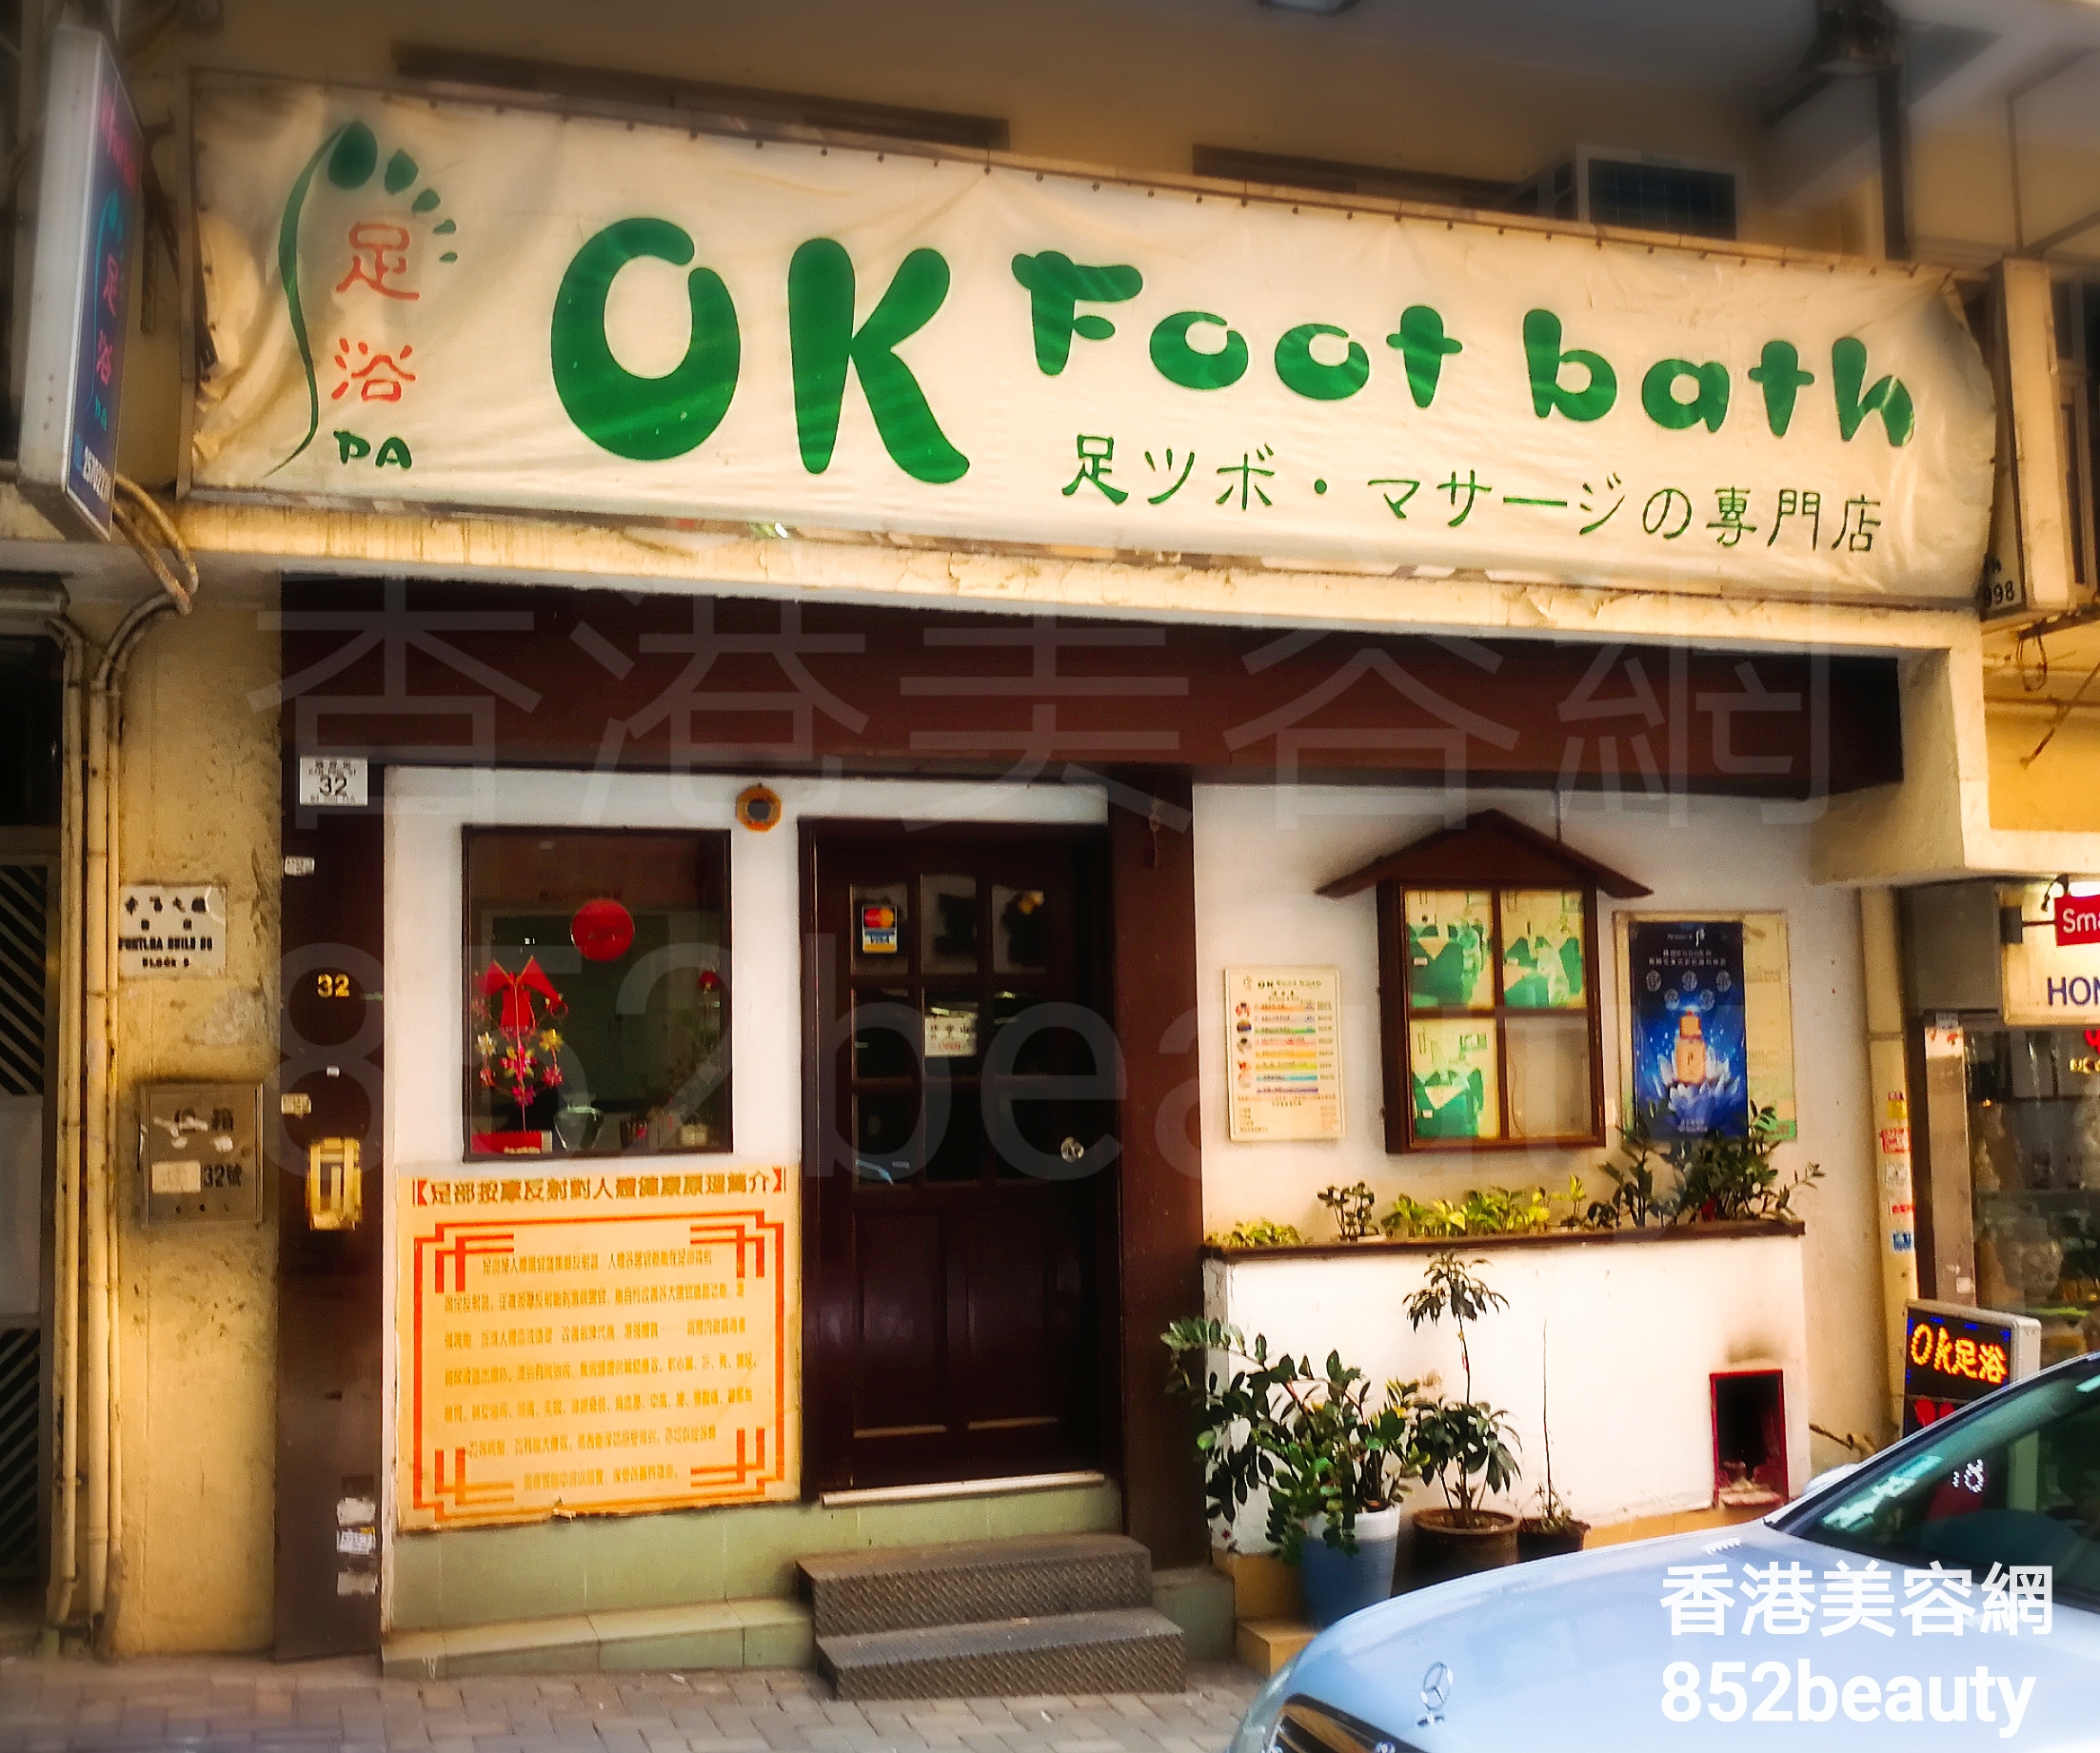 按摩/SPA: OK Foot bath